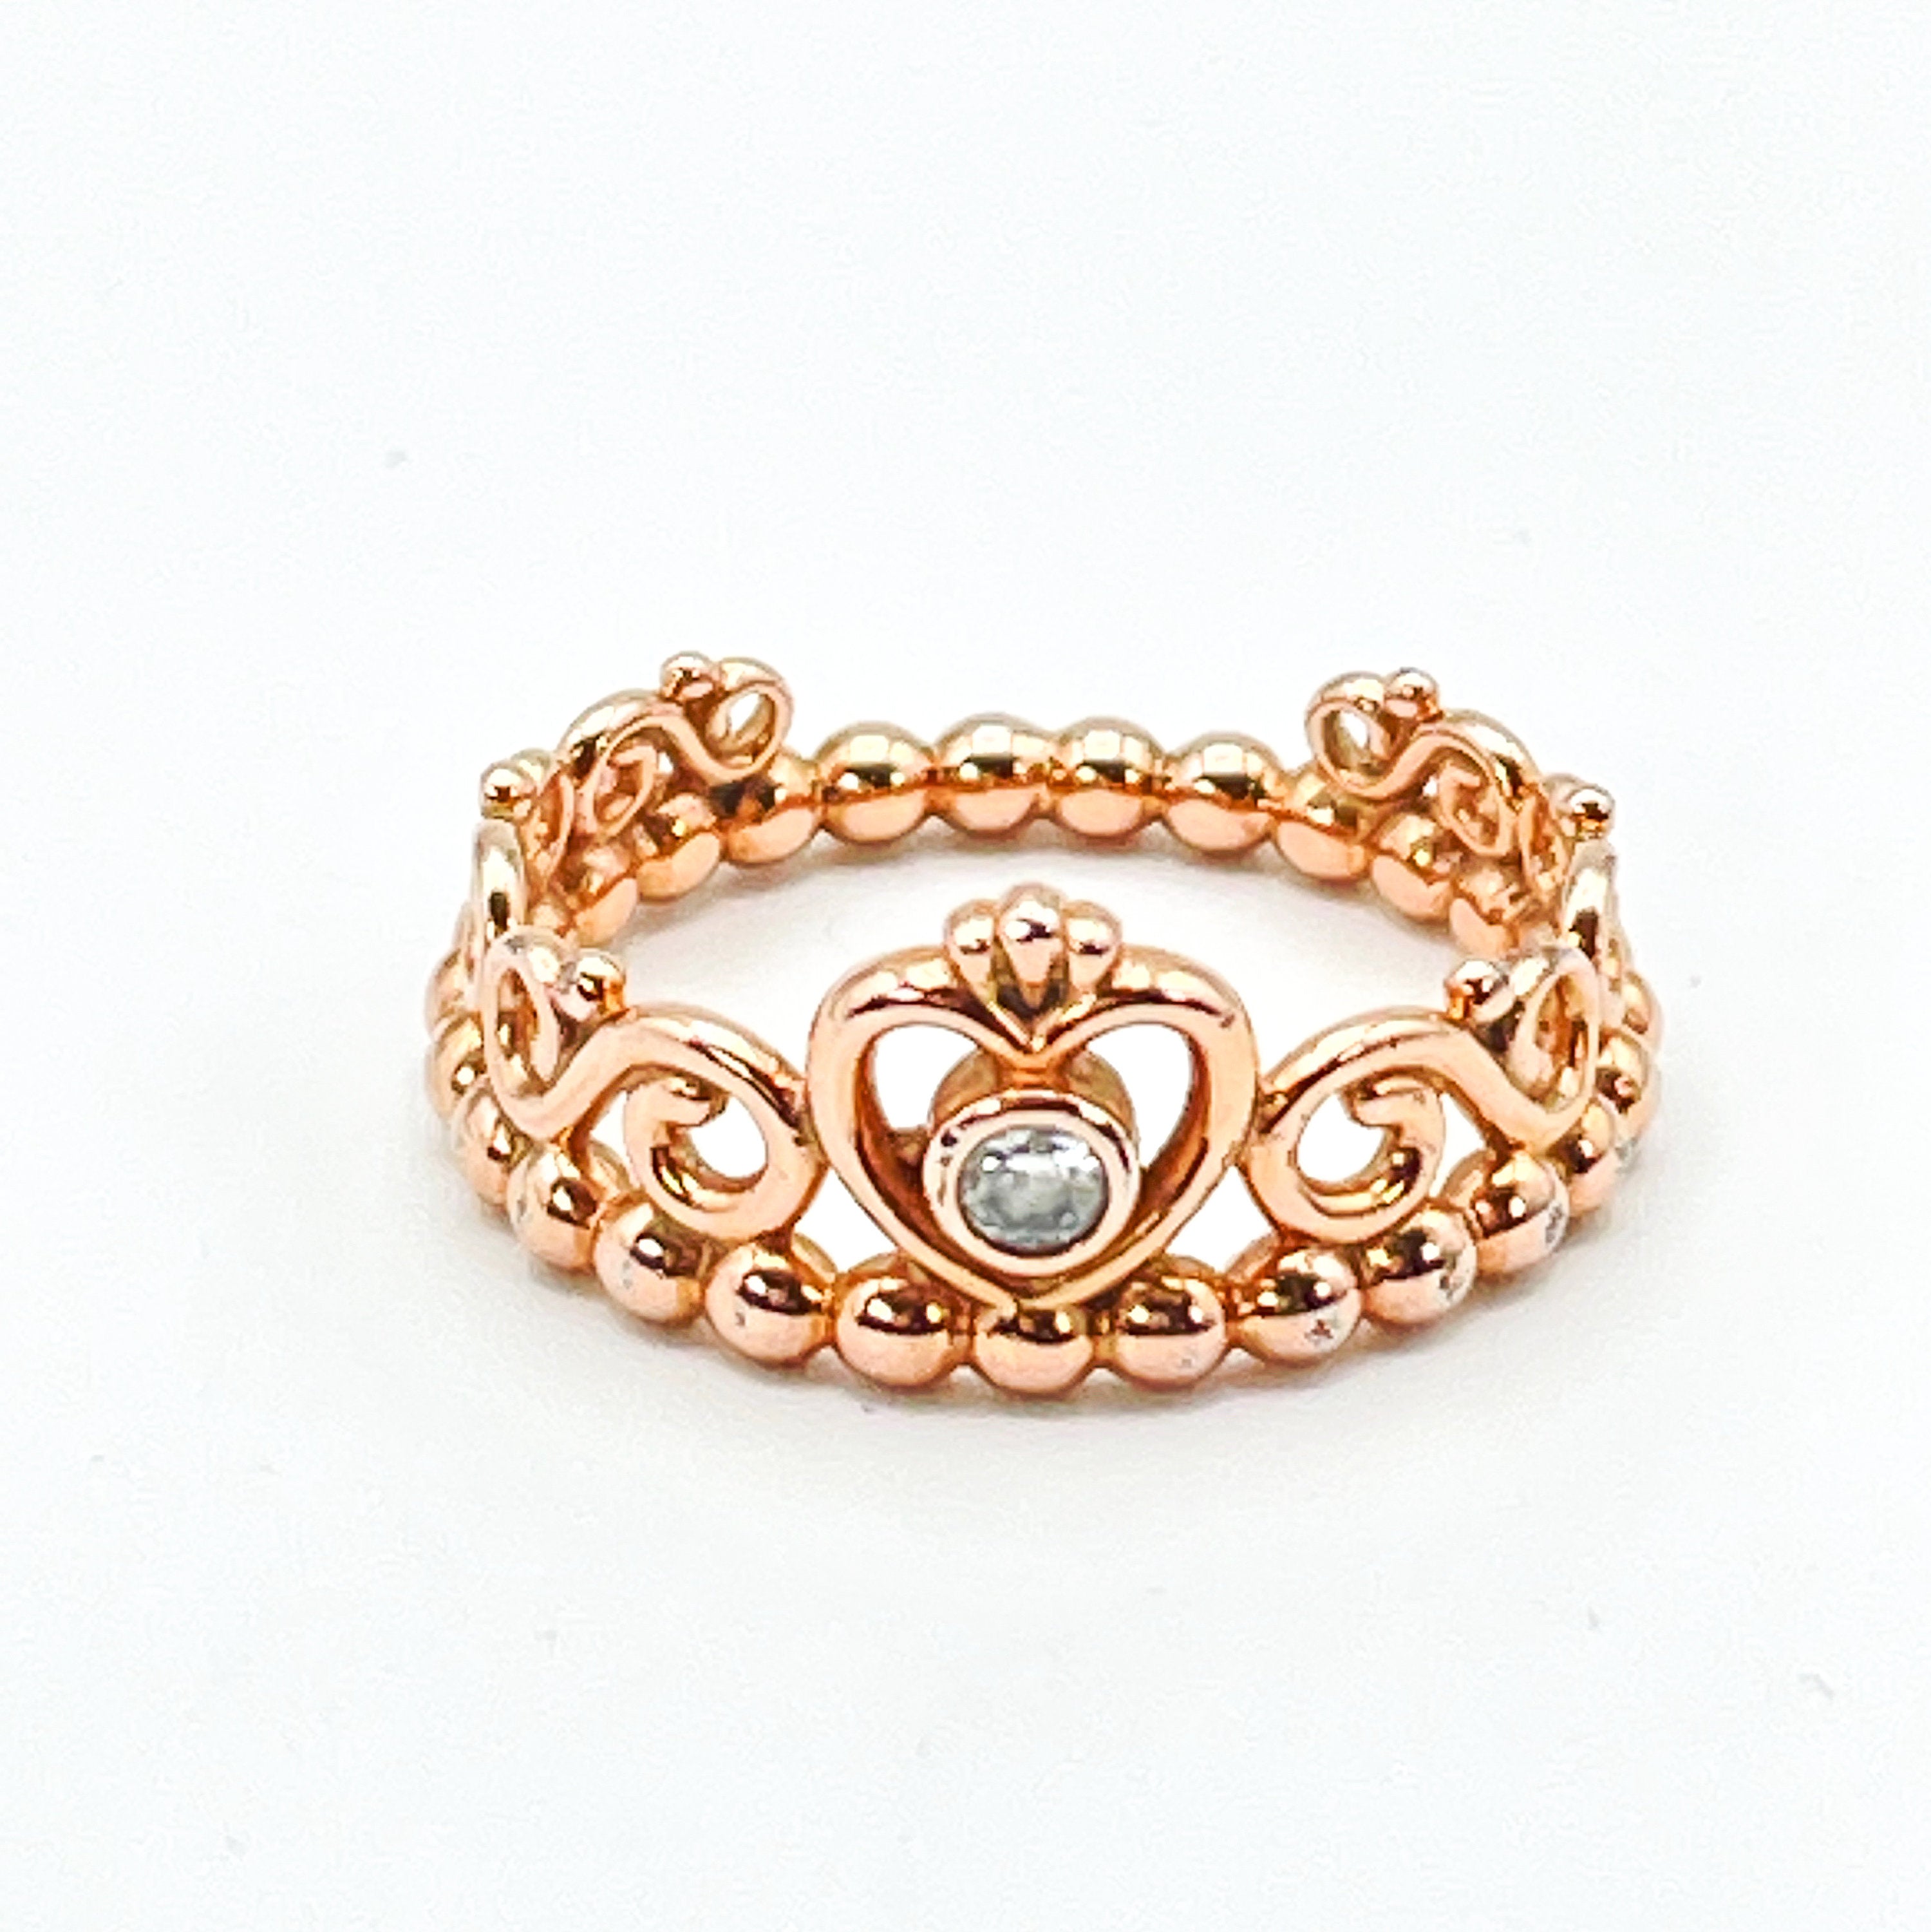 Tiara Collection | Princess ring, Tiara ring, Jewelry